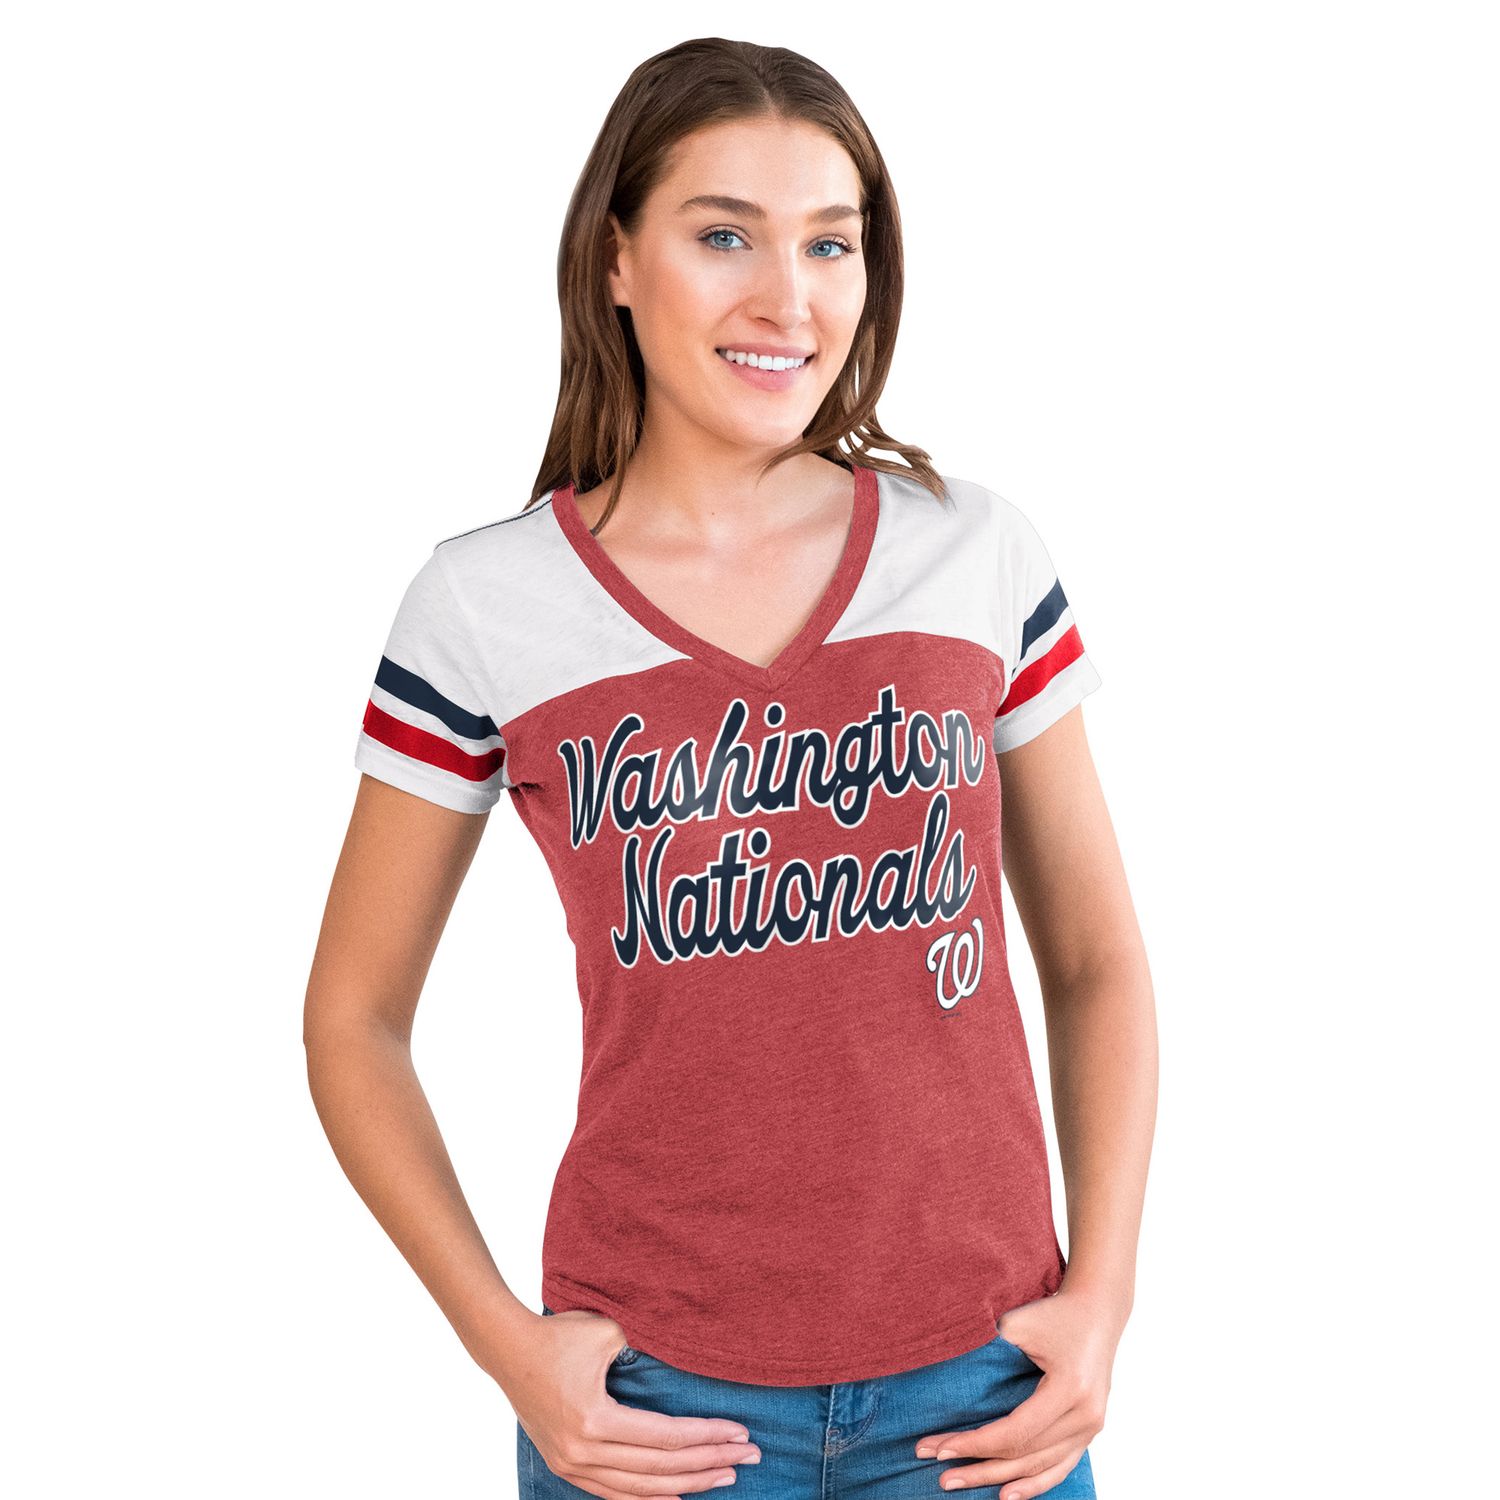 nationals women's shirt